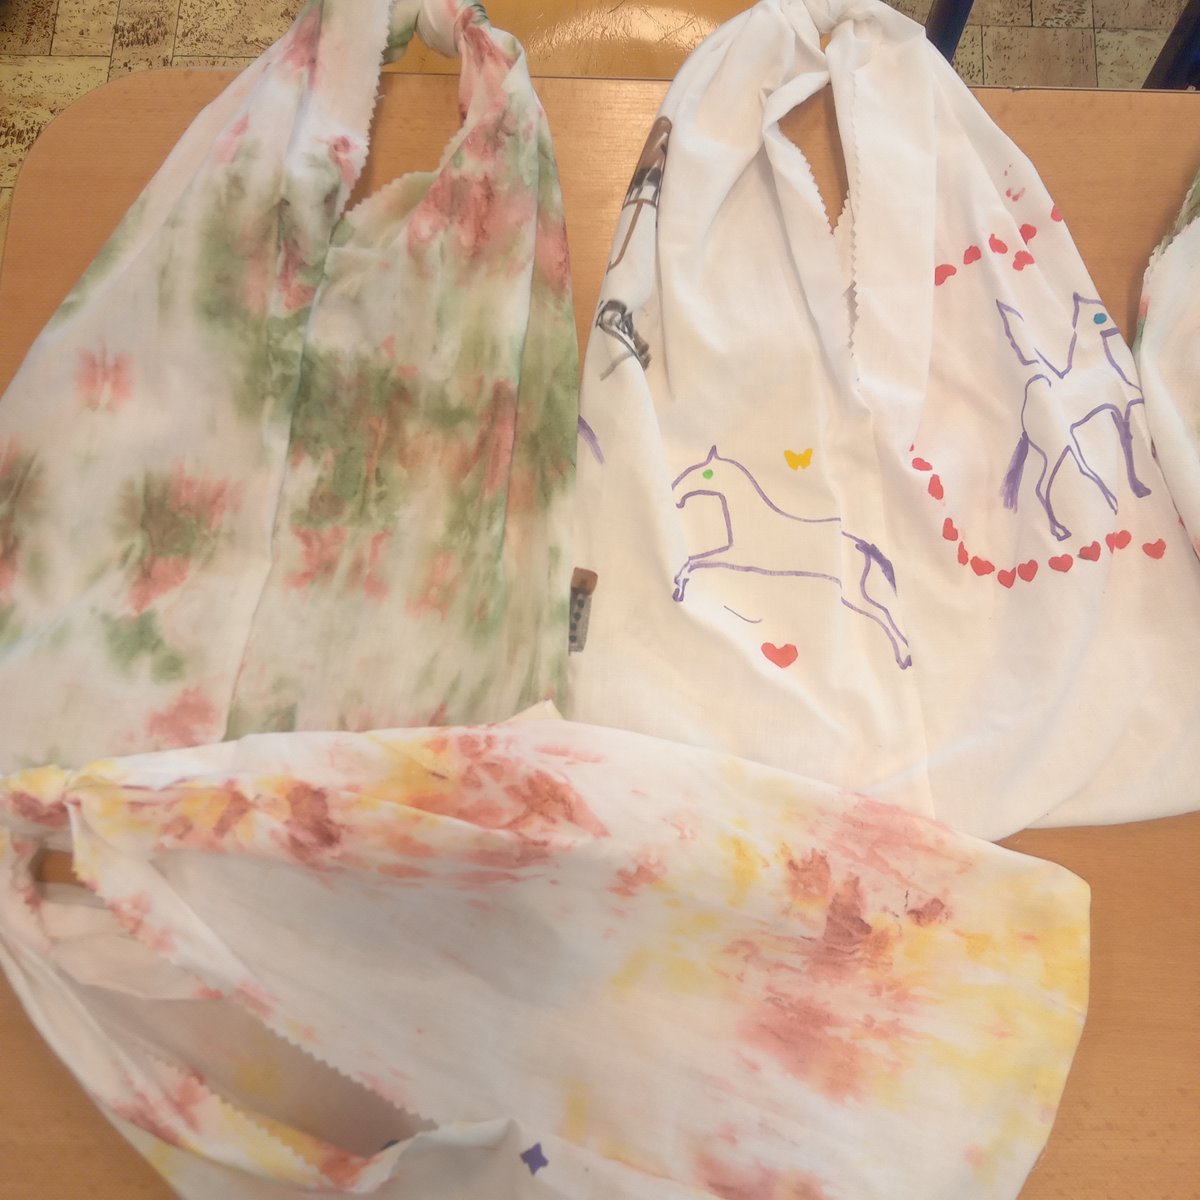 Prázdninové tašky - dekorujeme i šijeme 